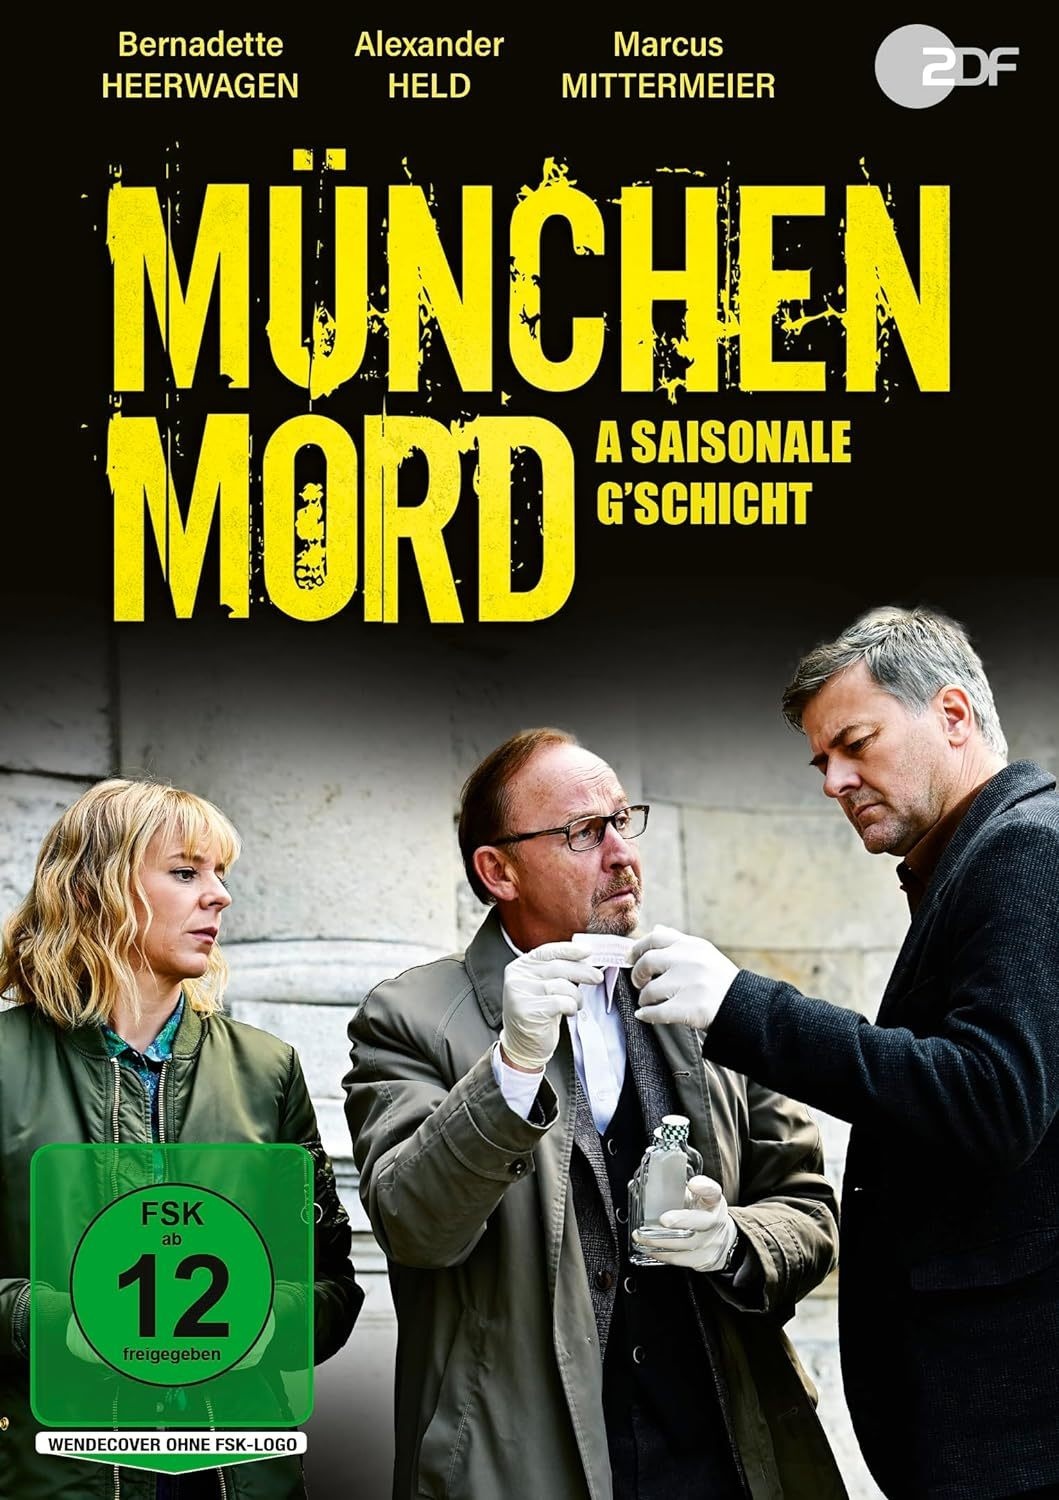 München Mord: A Saisonale G'schicht (DVD)